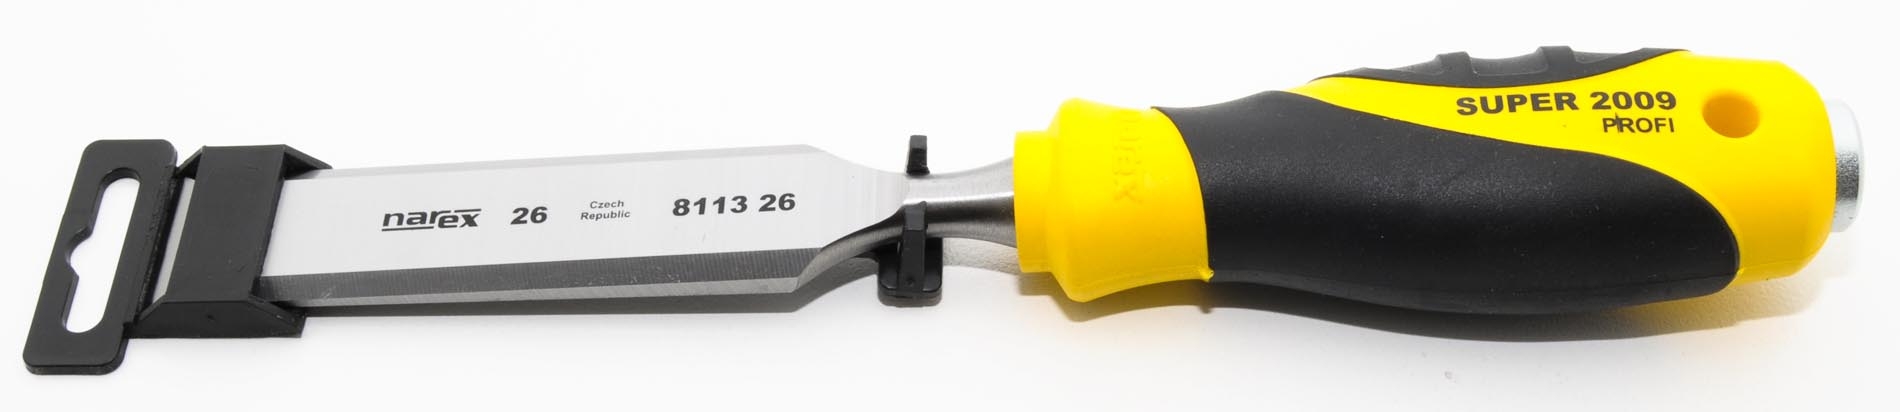 811326-Formon 26mm , mango amarillo plastico punta fierro NAREX 811326-max-7.